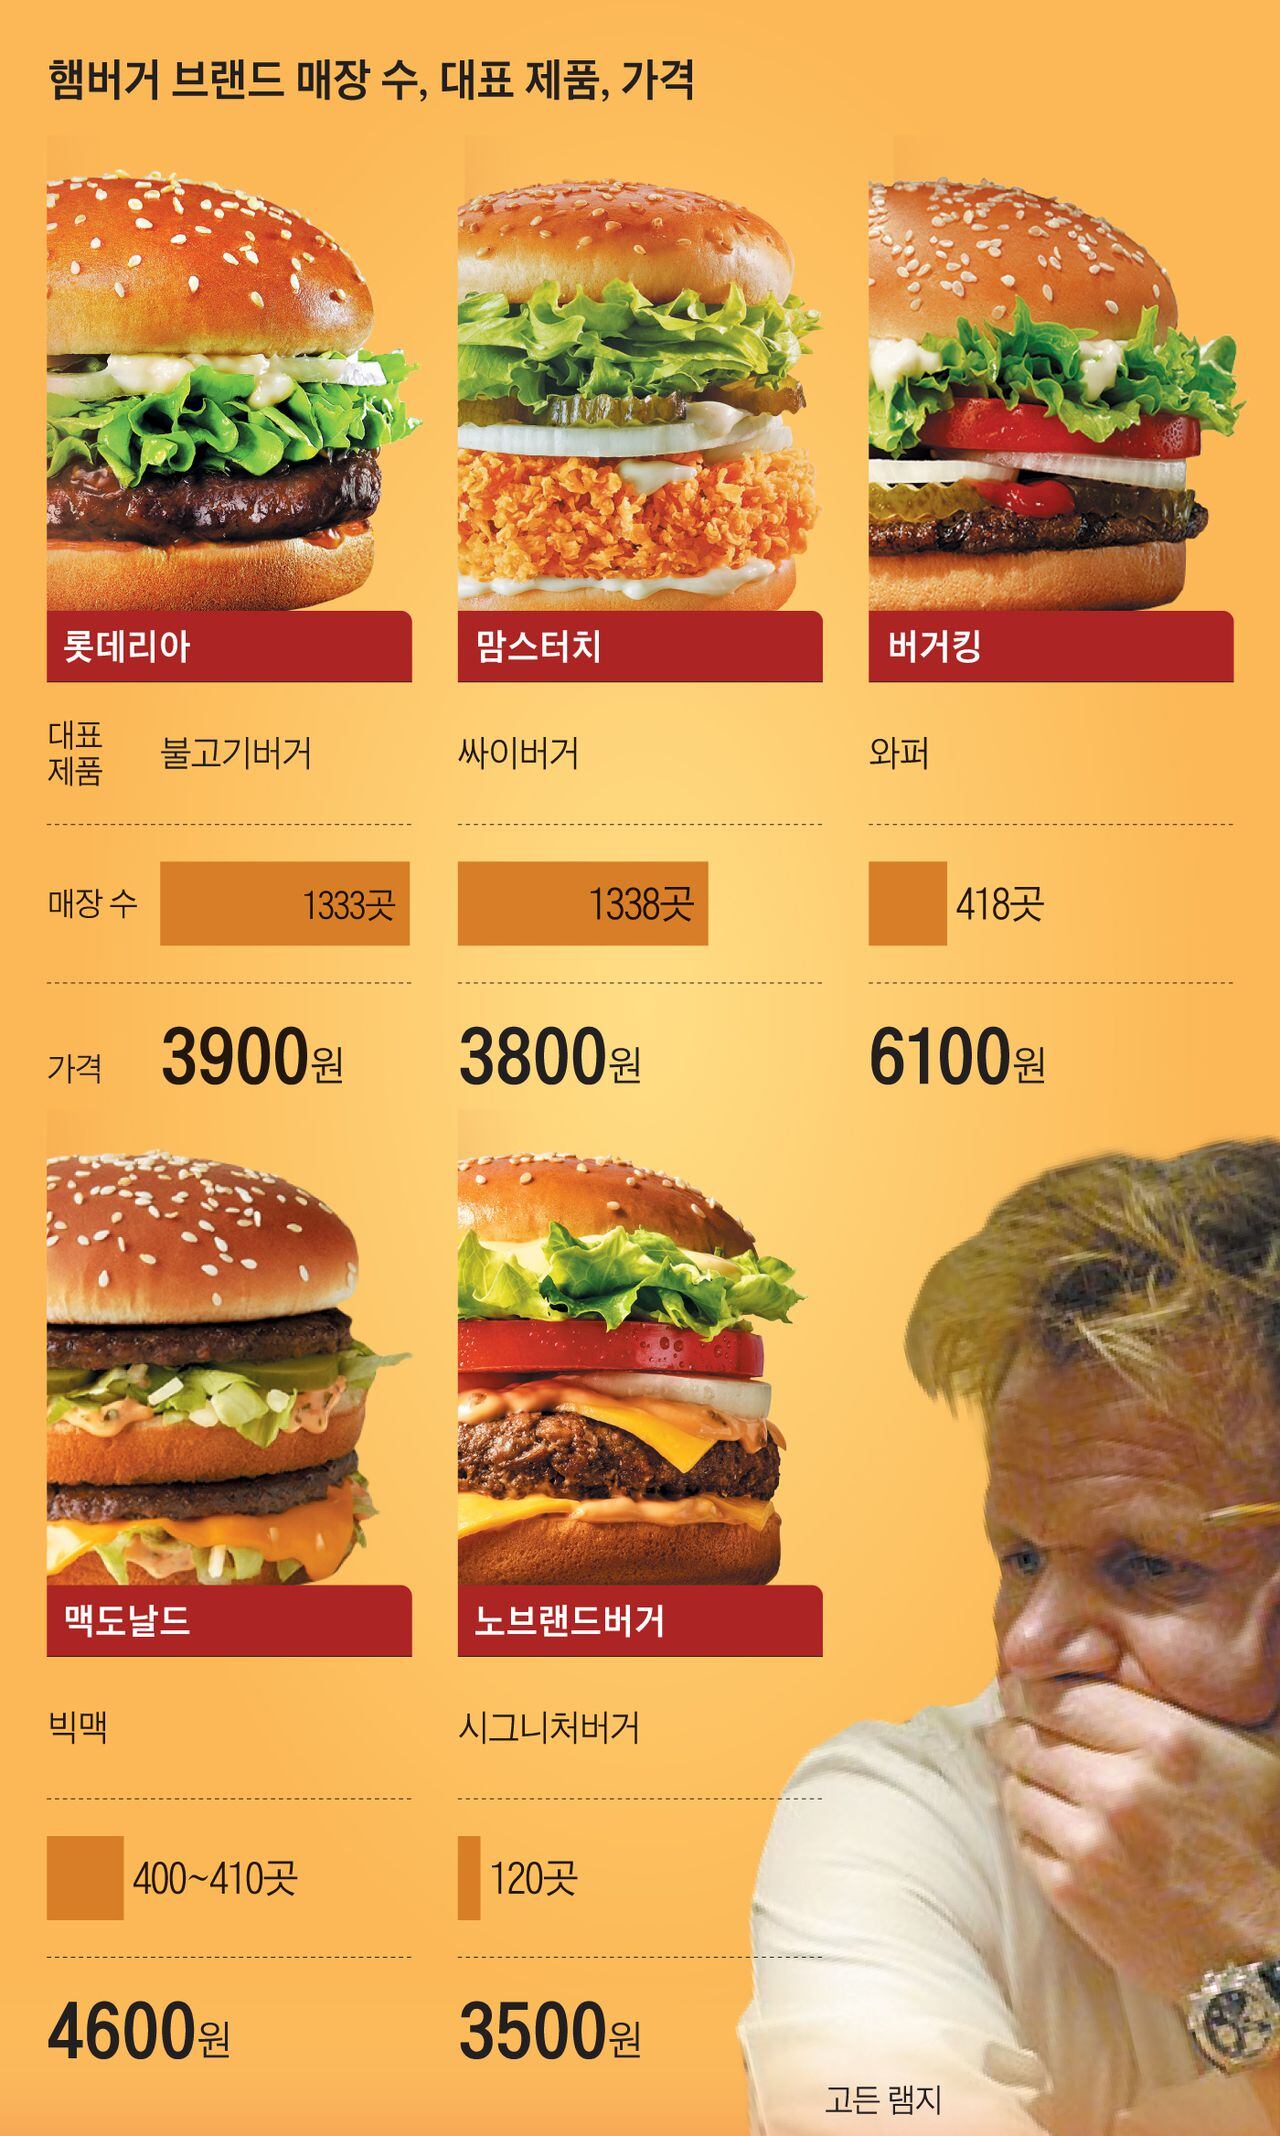 英 고든 램지까지 온다, 한국 햄버거 시장 이토록 뜨거워진 이유 - 조선일보